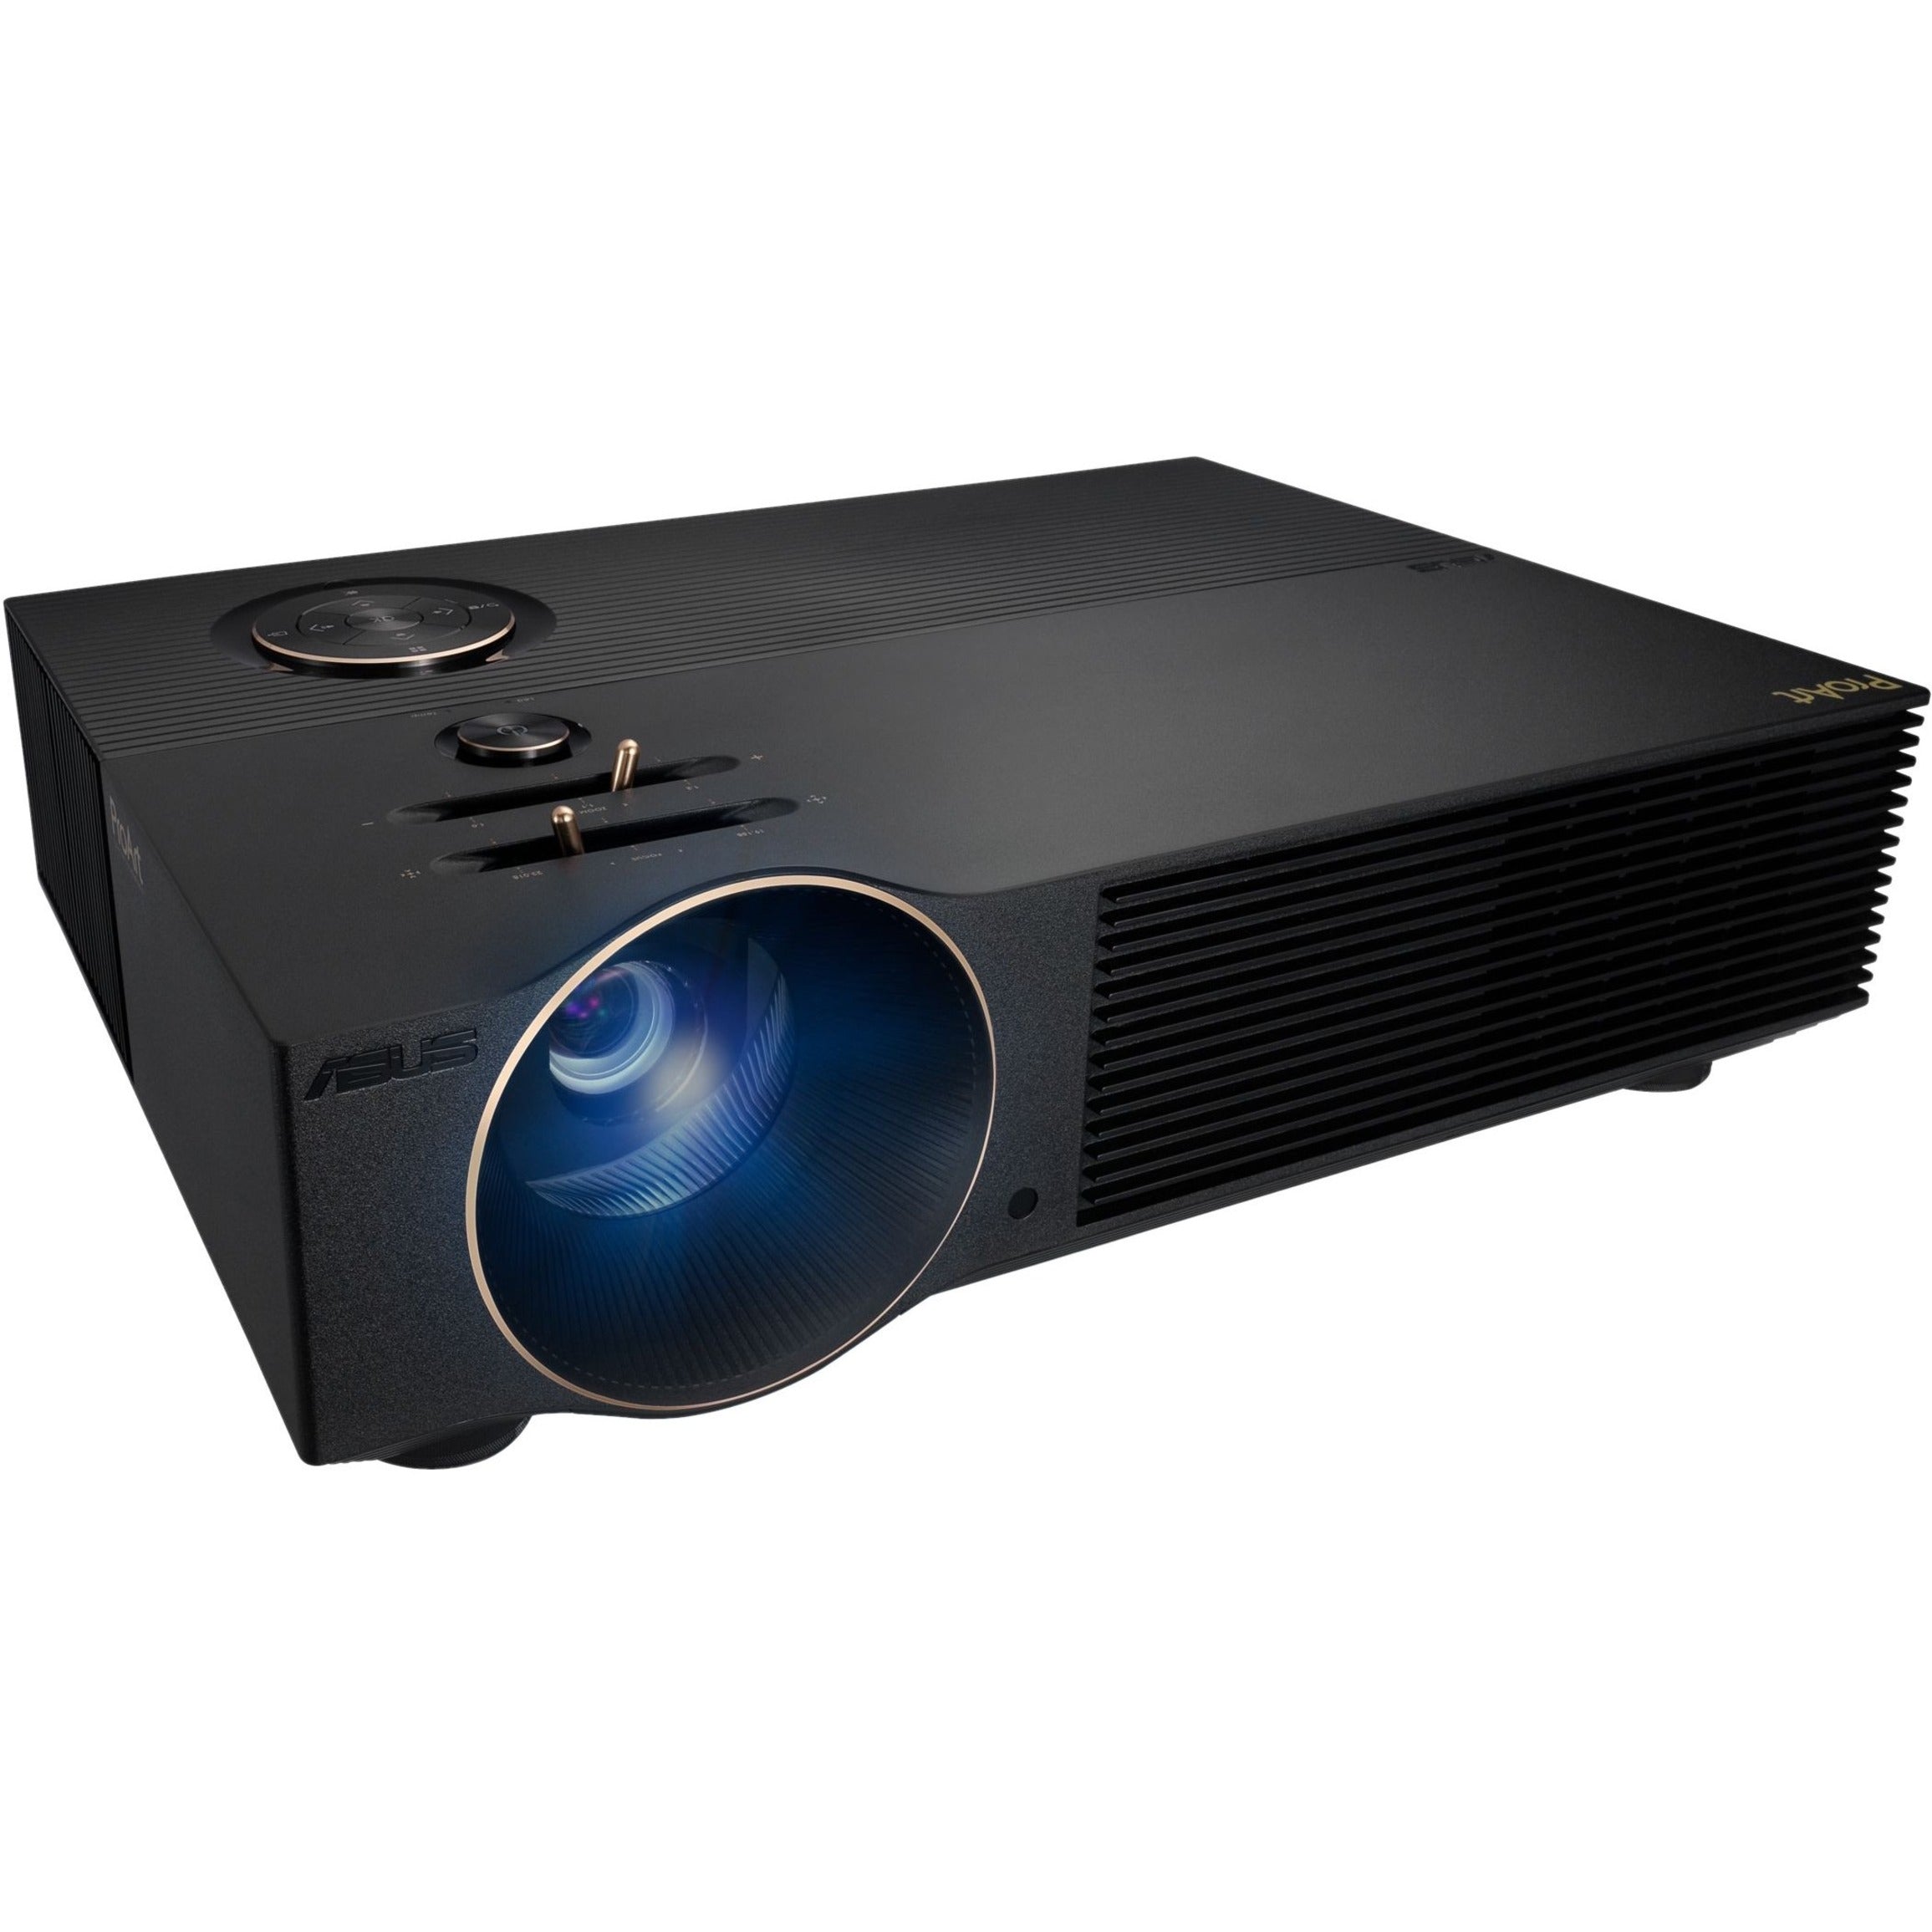 Asus ProArt DLP Projector A1, Full HD, 16:9, 3000 lm, 2 Year Warranty